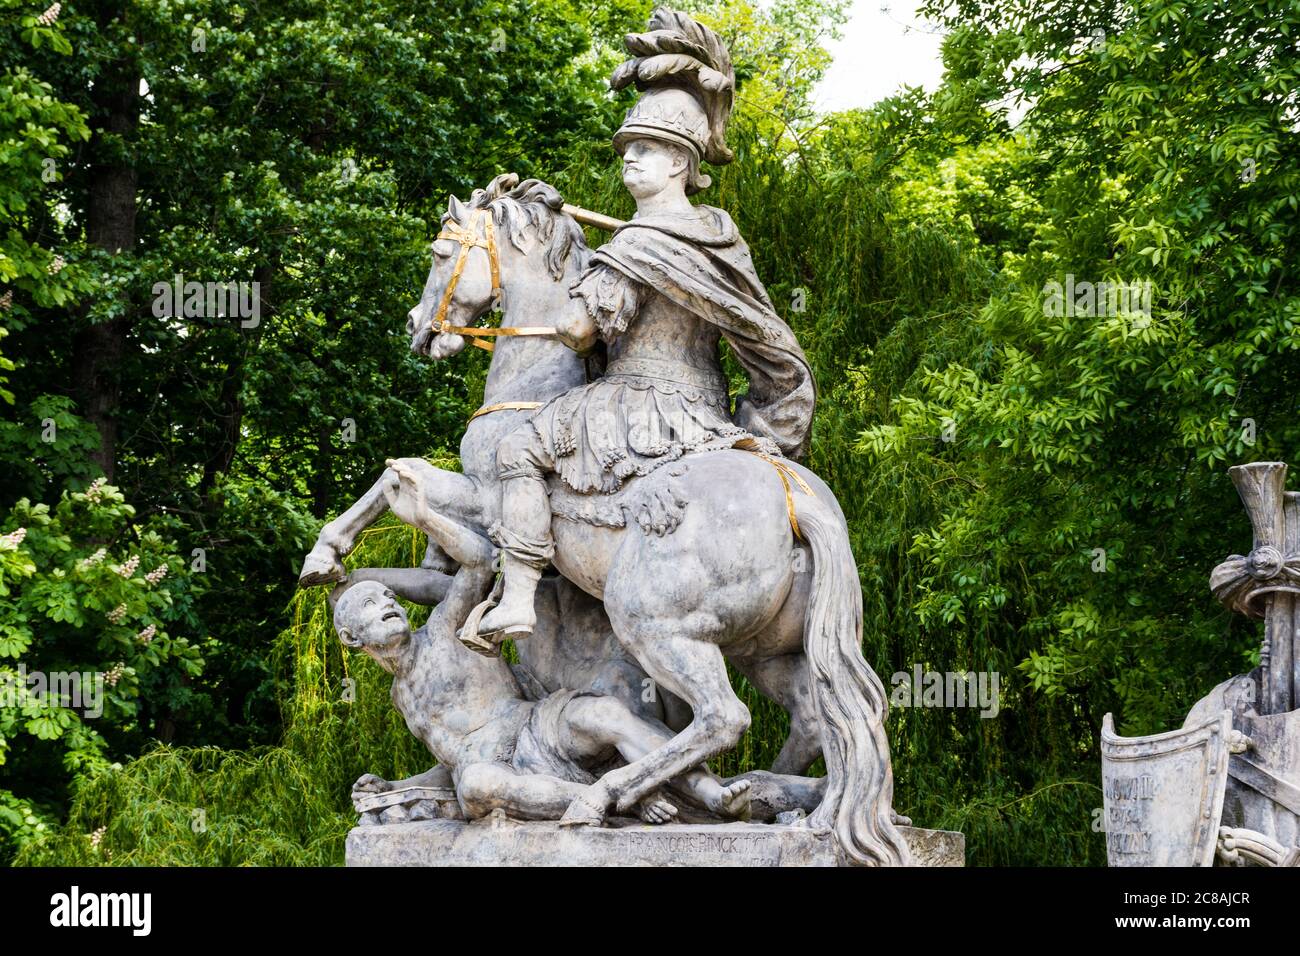 Monument of King John III Sobieski in Warsaw, Poland Stock Photo